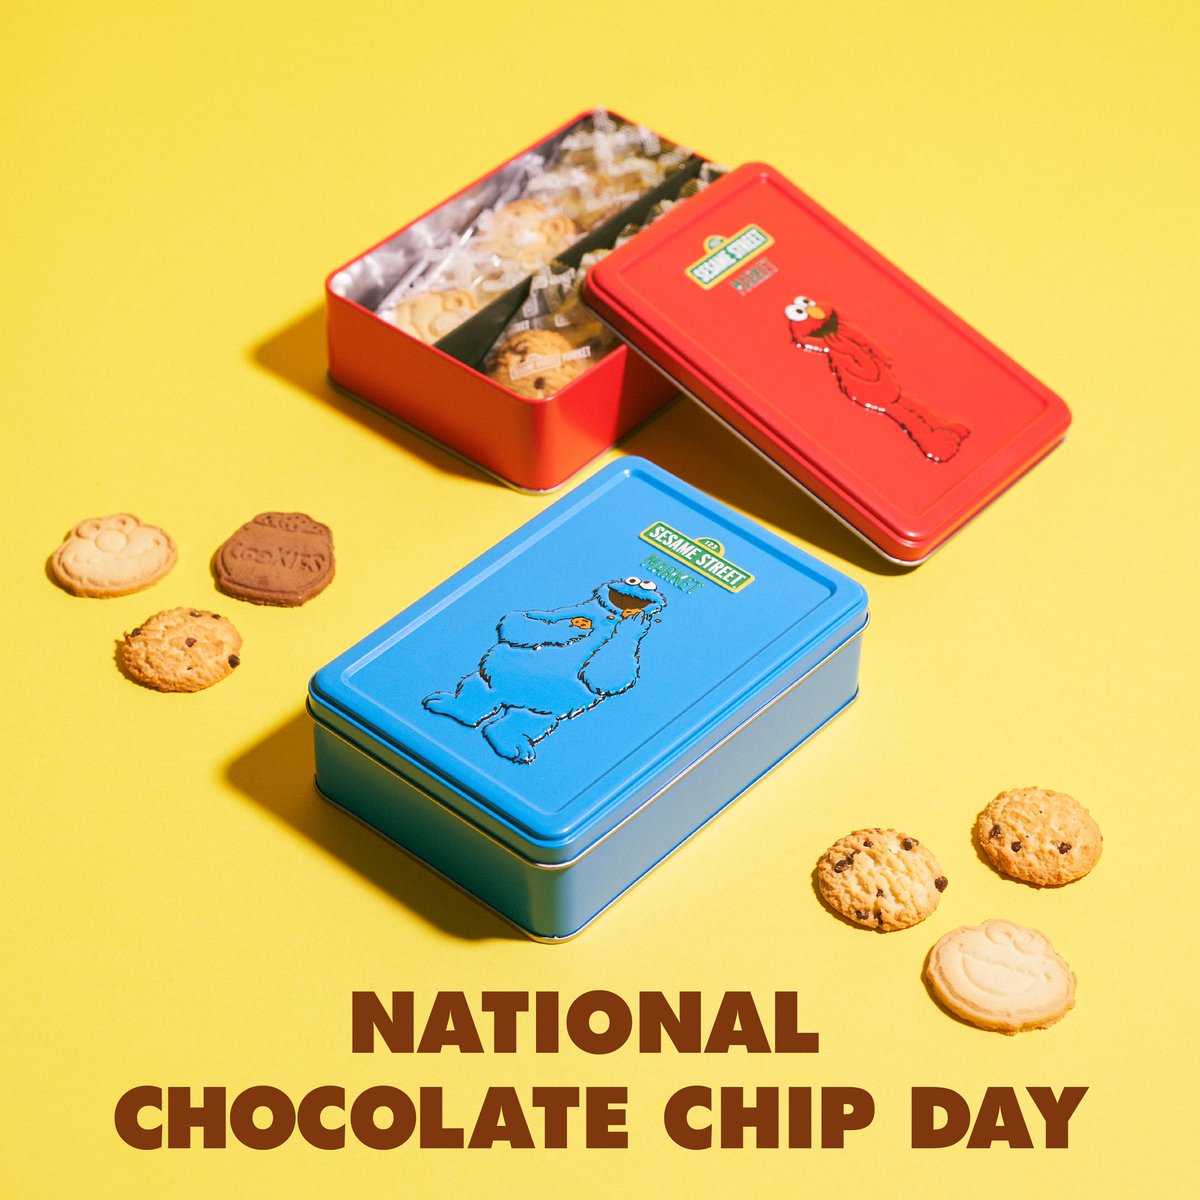 National Chocolate Chip Day🍪 今日はアメリカの #チョコレートチップクッキーデー 店内でも一際目立つカラーでトレードマークのようなエルモとクッキーモンスターのクッキー缶には、チョコチップクッキーが入っています🍪 今日はおやつにチョコチップクッキーがおすすめ✨